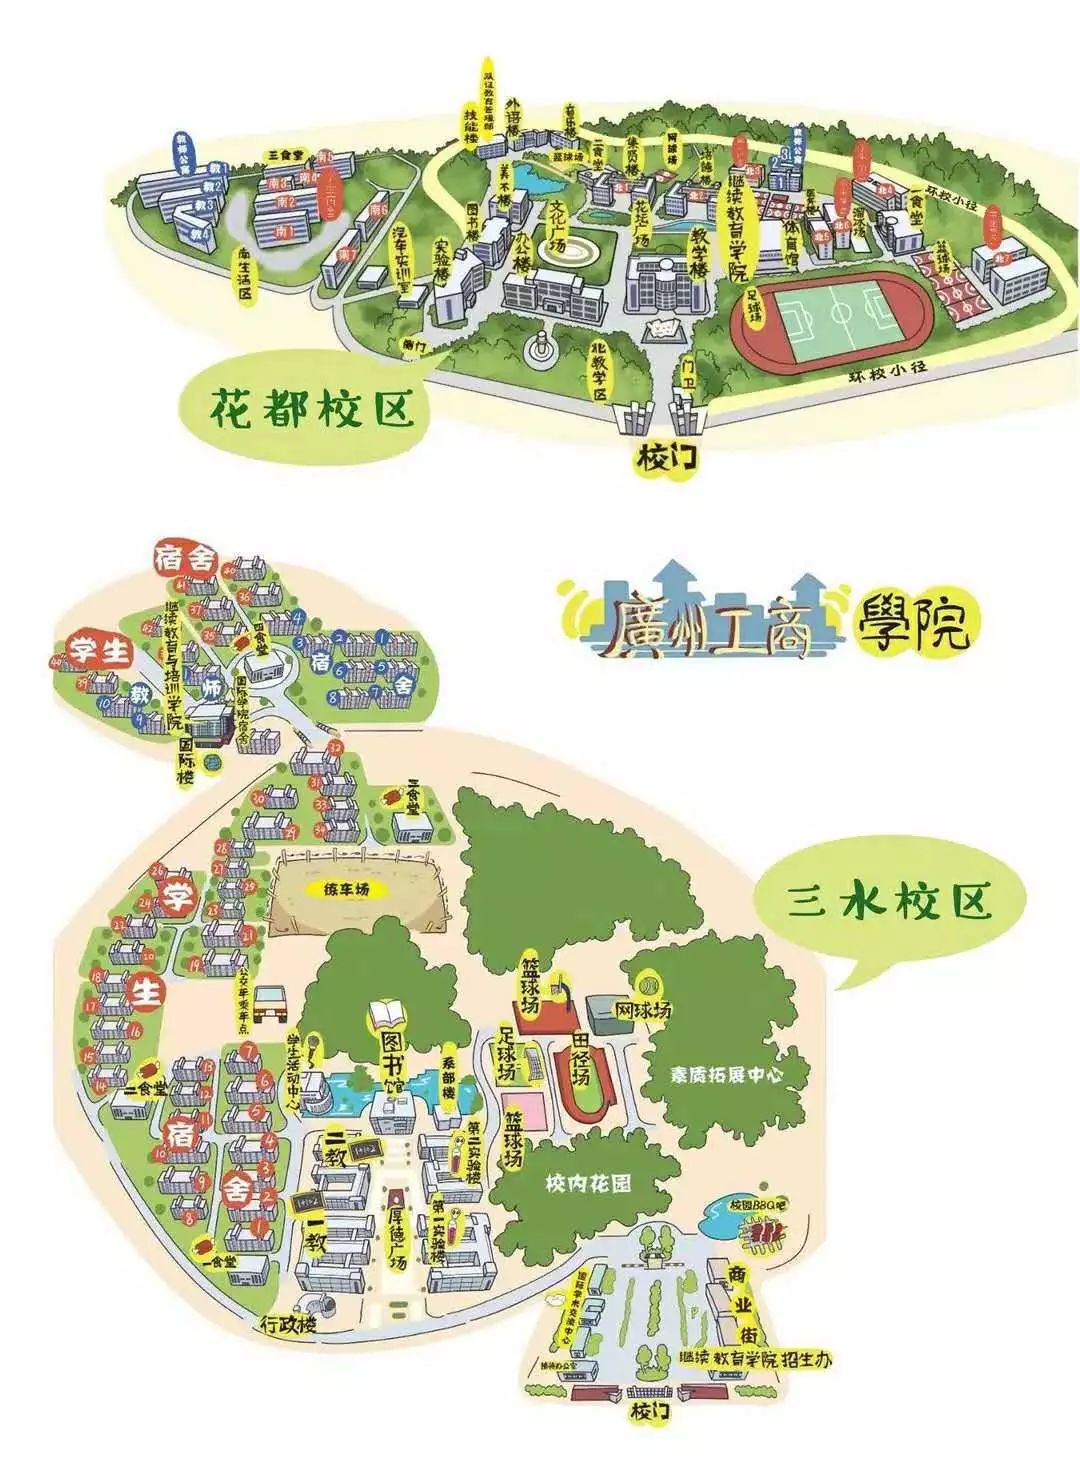 地图图片来源于广州工商学院招生办 编辑:高仕奇